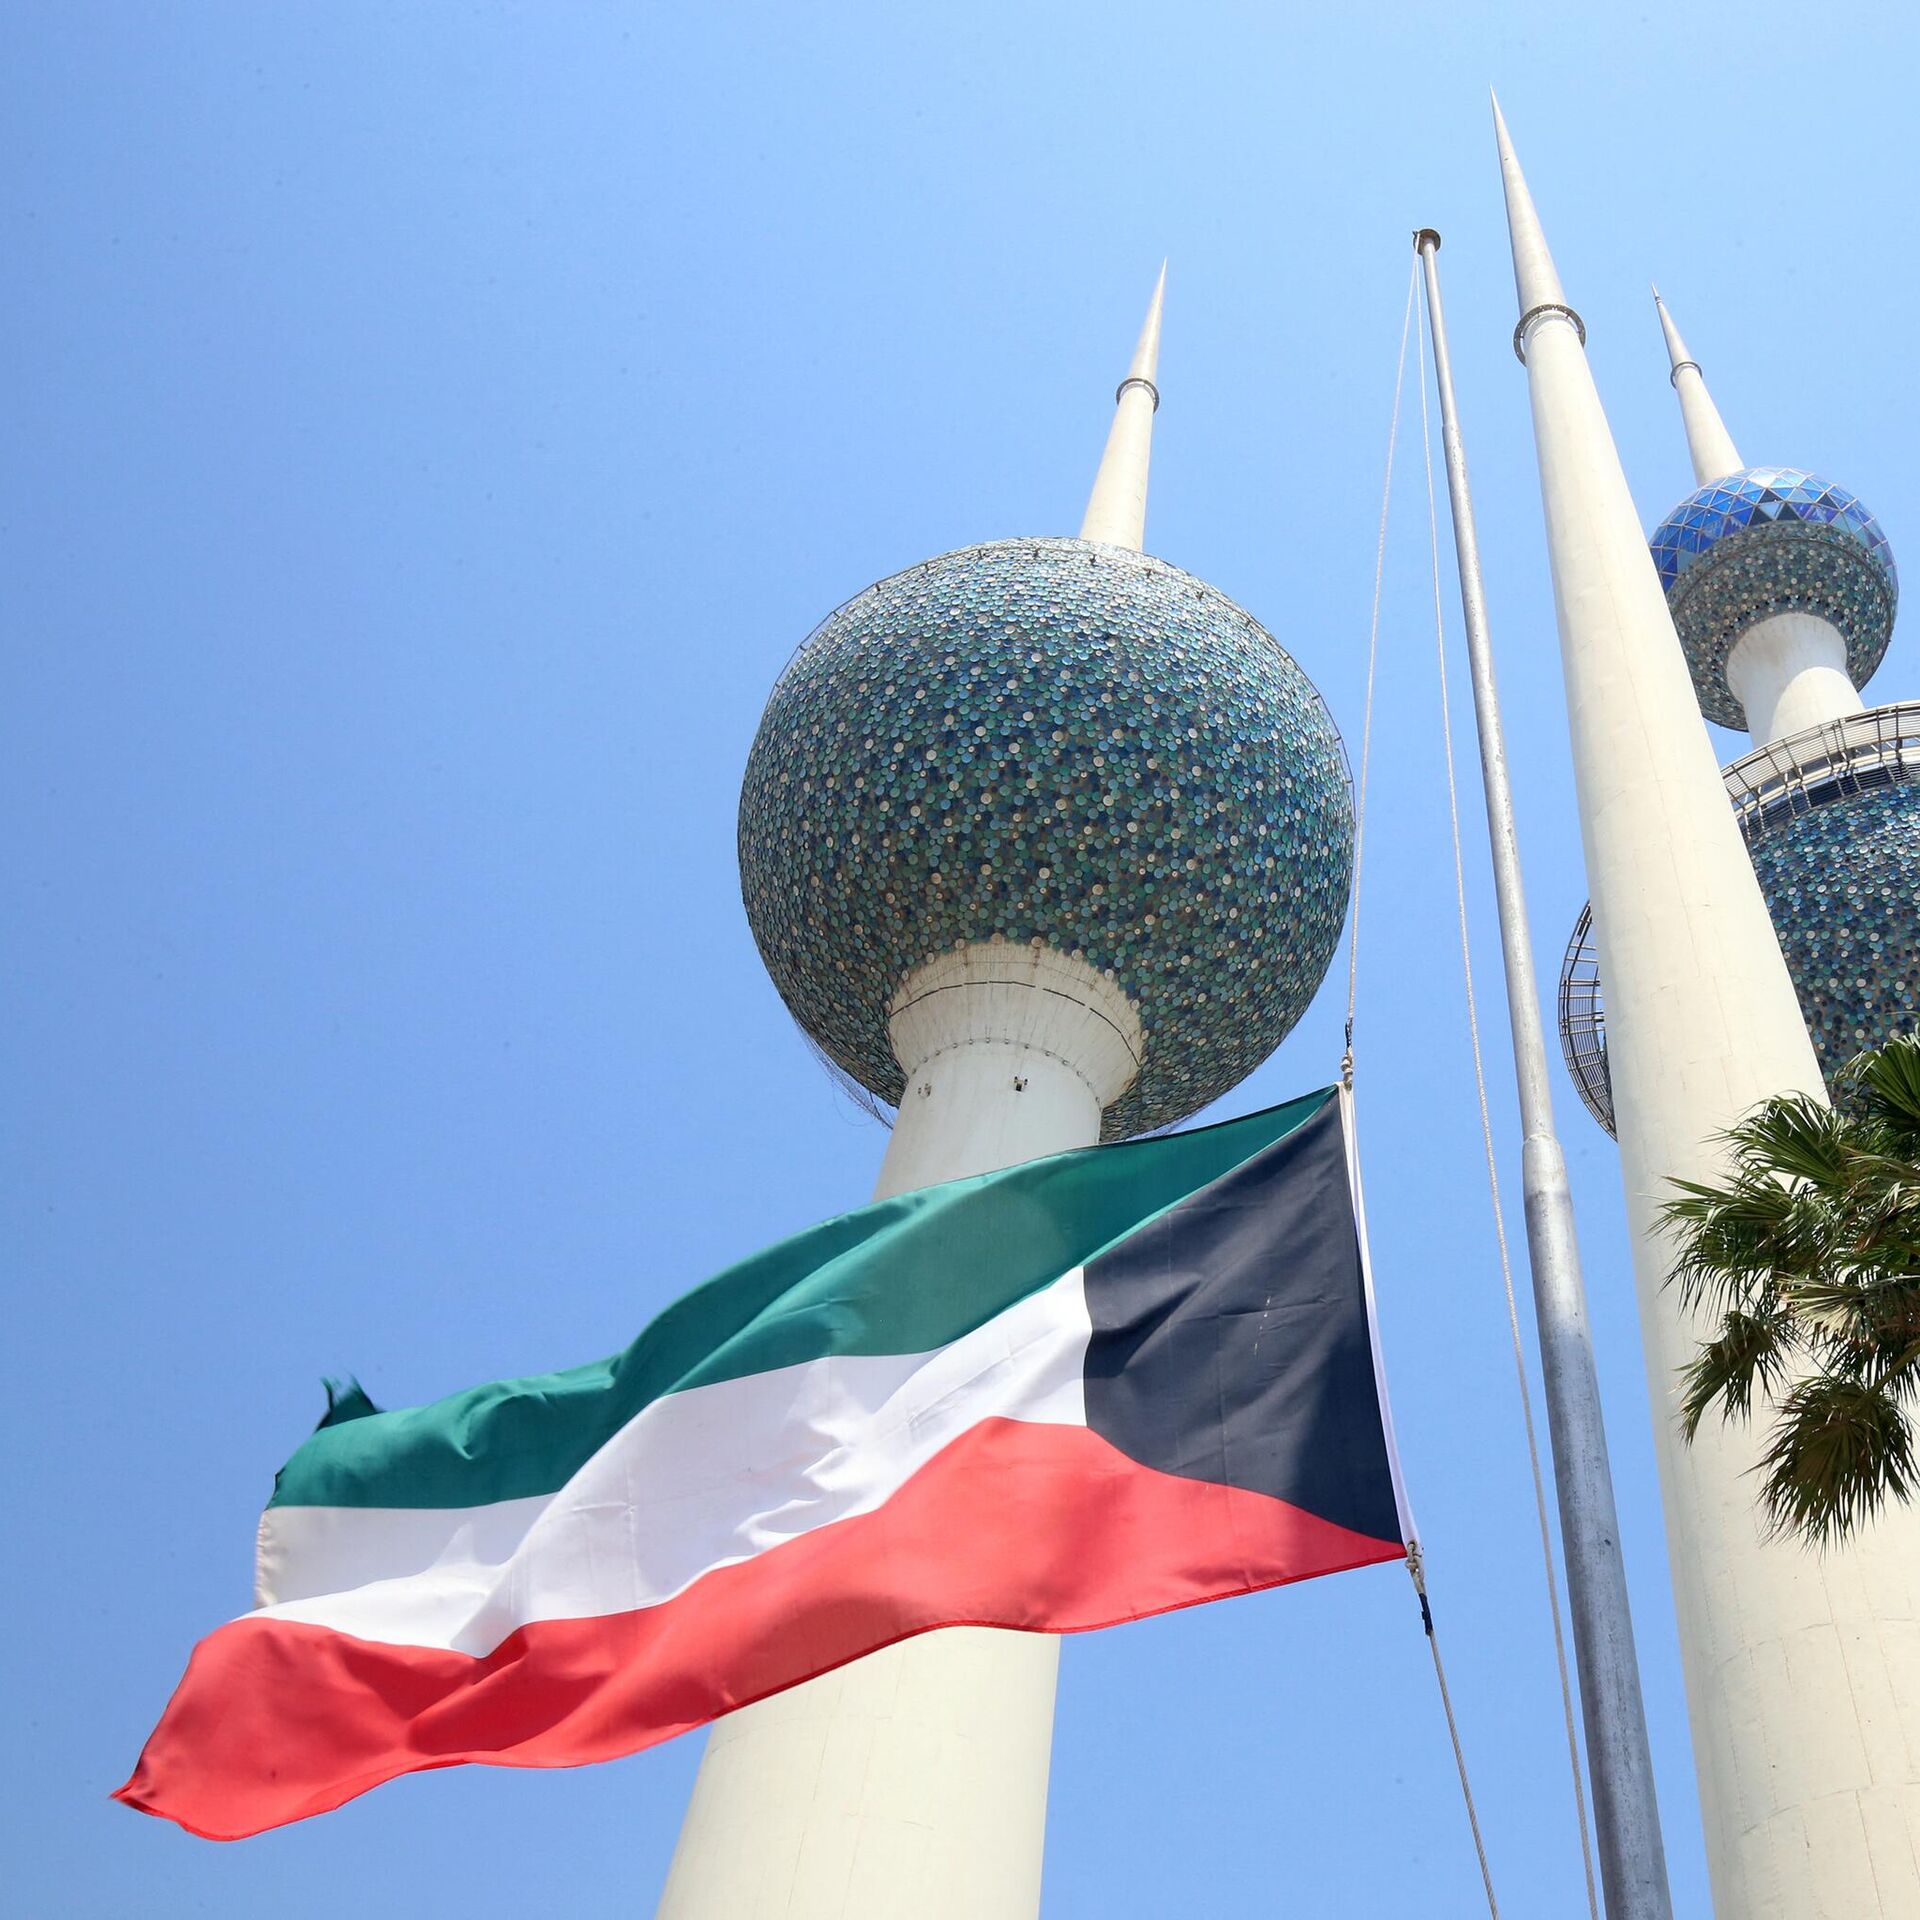 Interpretimi i një ëndrre për udhëtimin në Kuvajt dhe interpretimi i një ëndrre për kthimin nga Kuvajti - përmbajtja